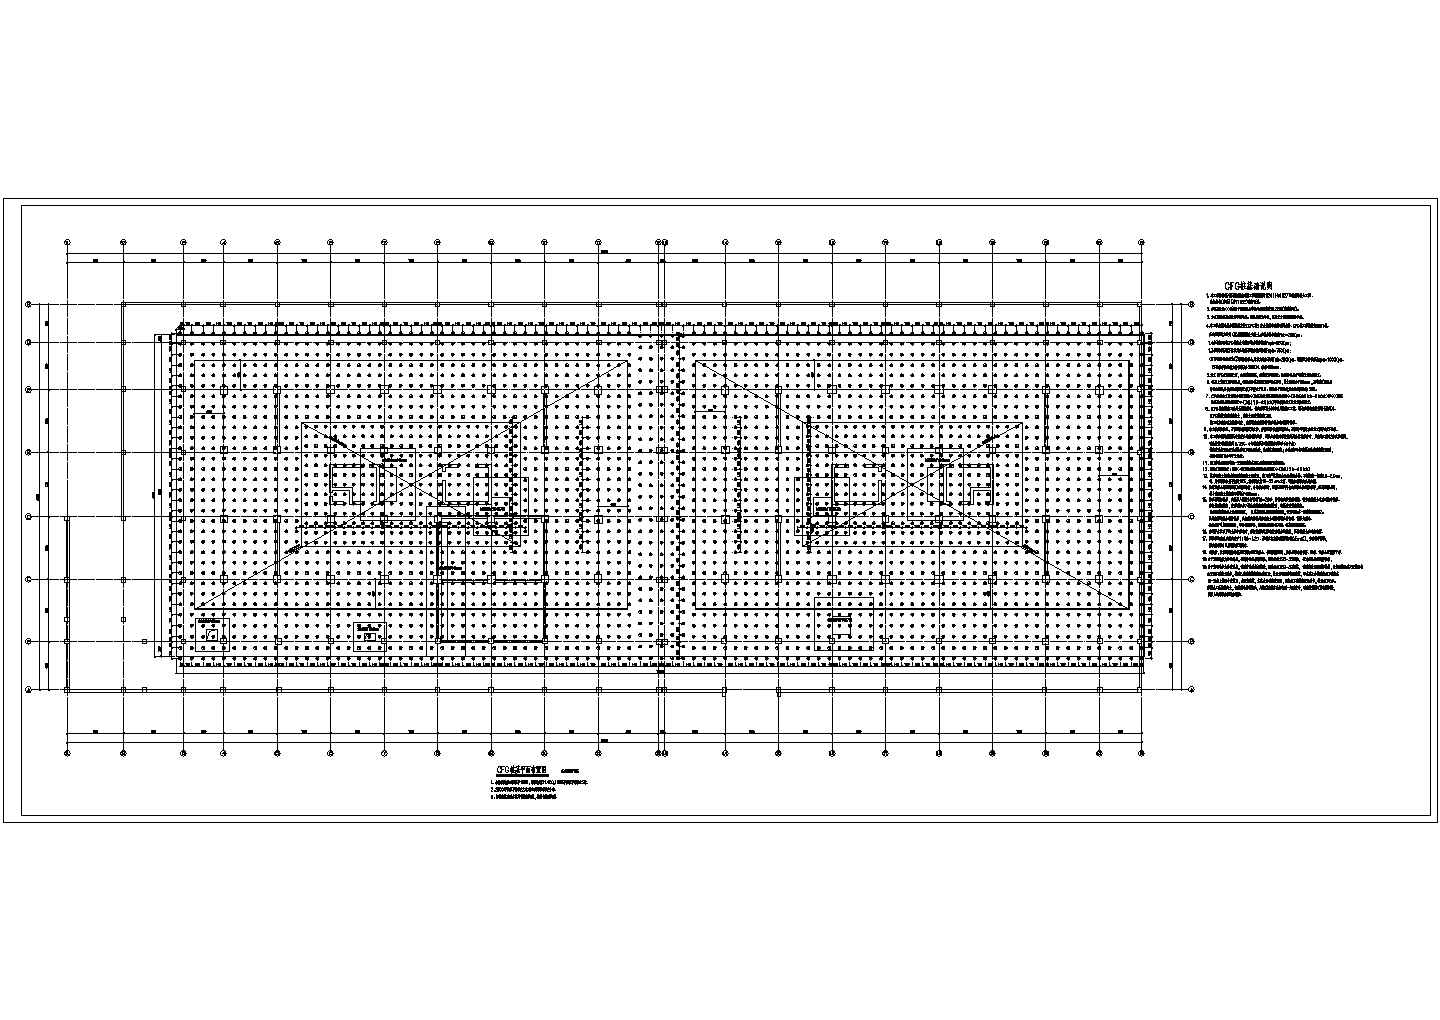 某高层建筑地下室CFG桩地基处理及基础结构施工图